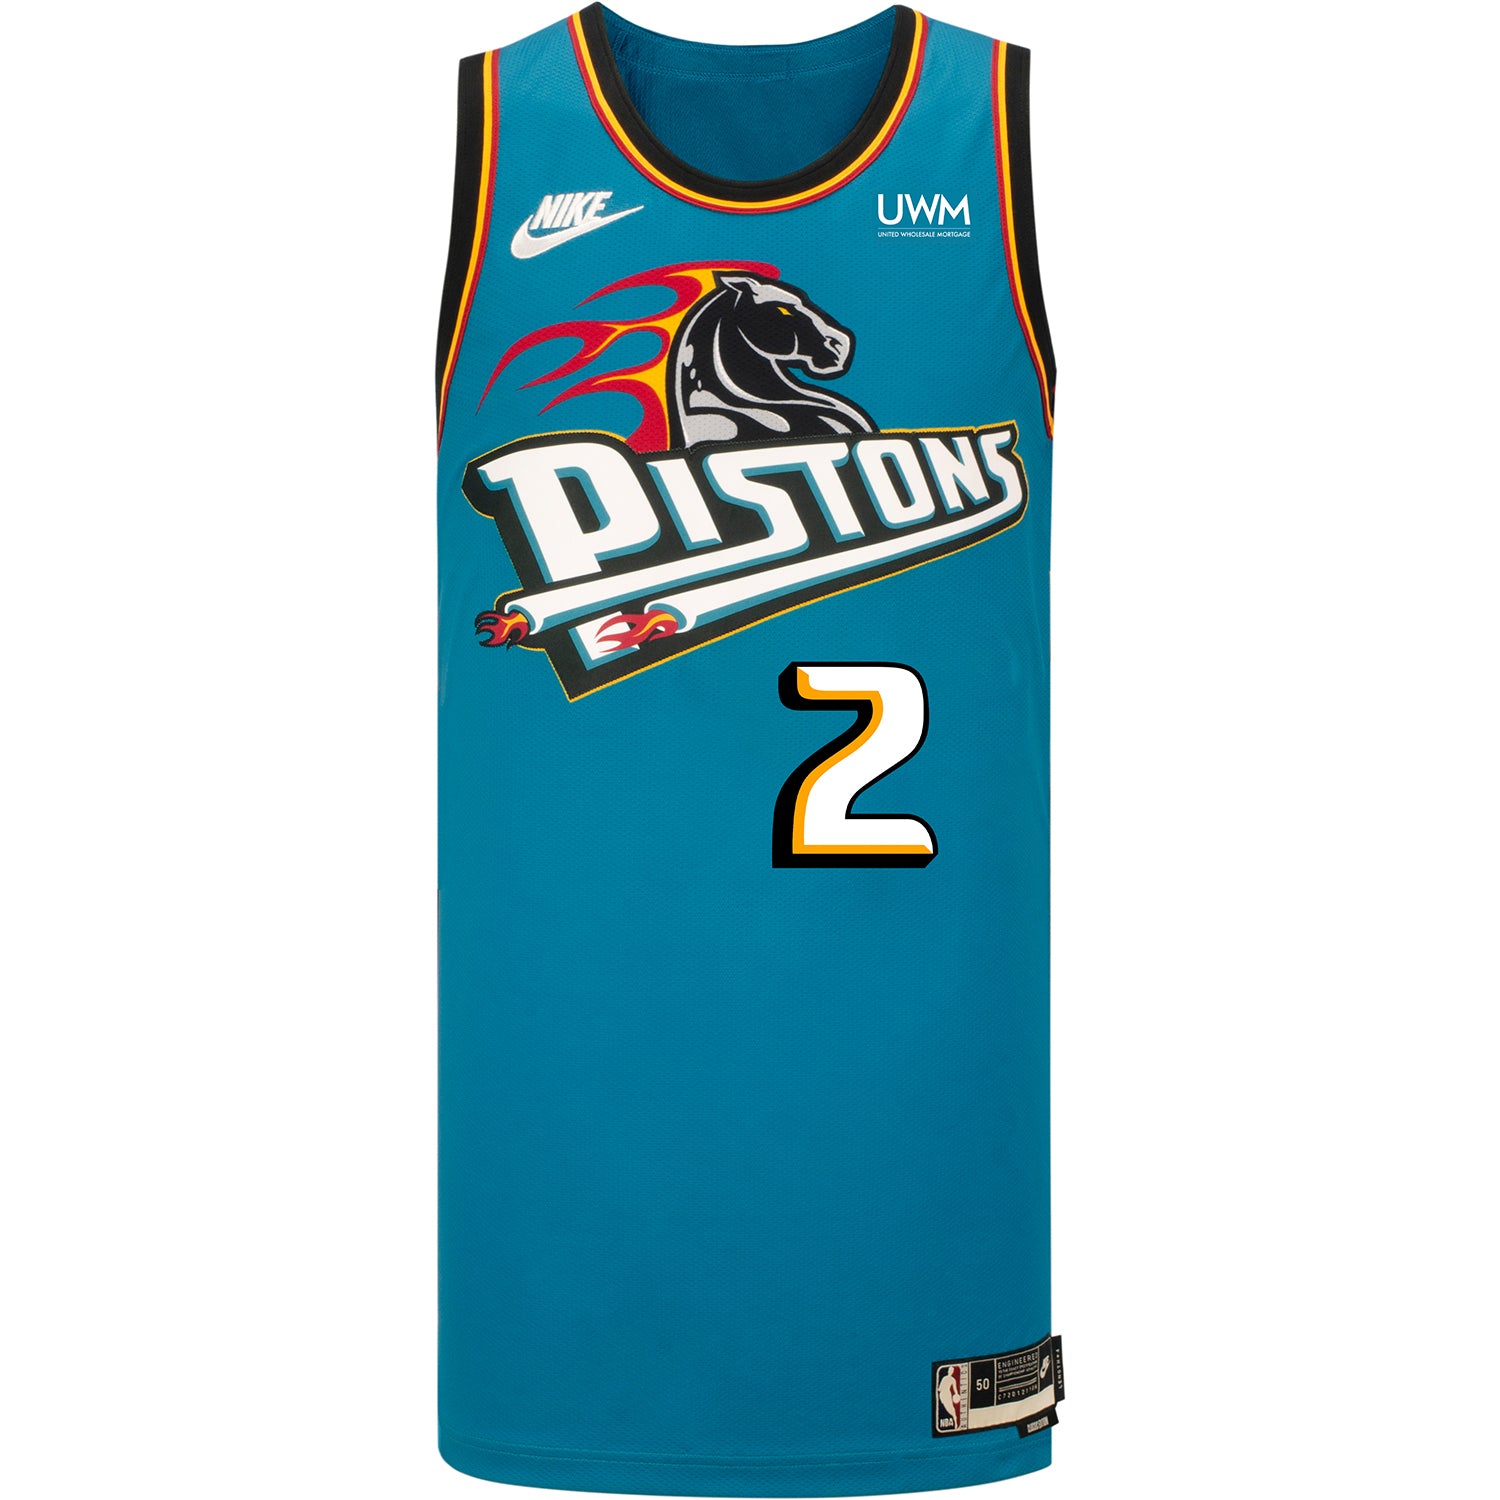 Personalized Jordan Brand Statement Detroit Pistons Swingman Jersey -  2022-23